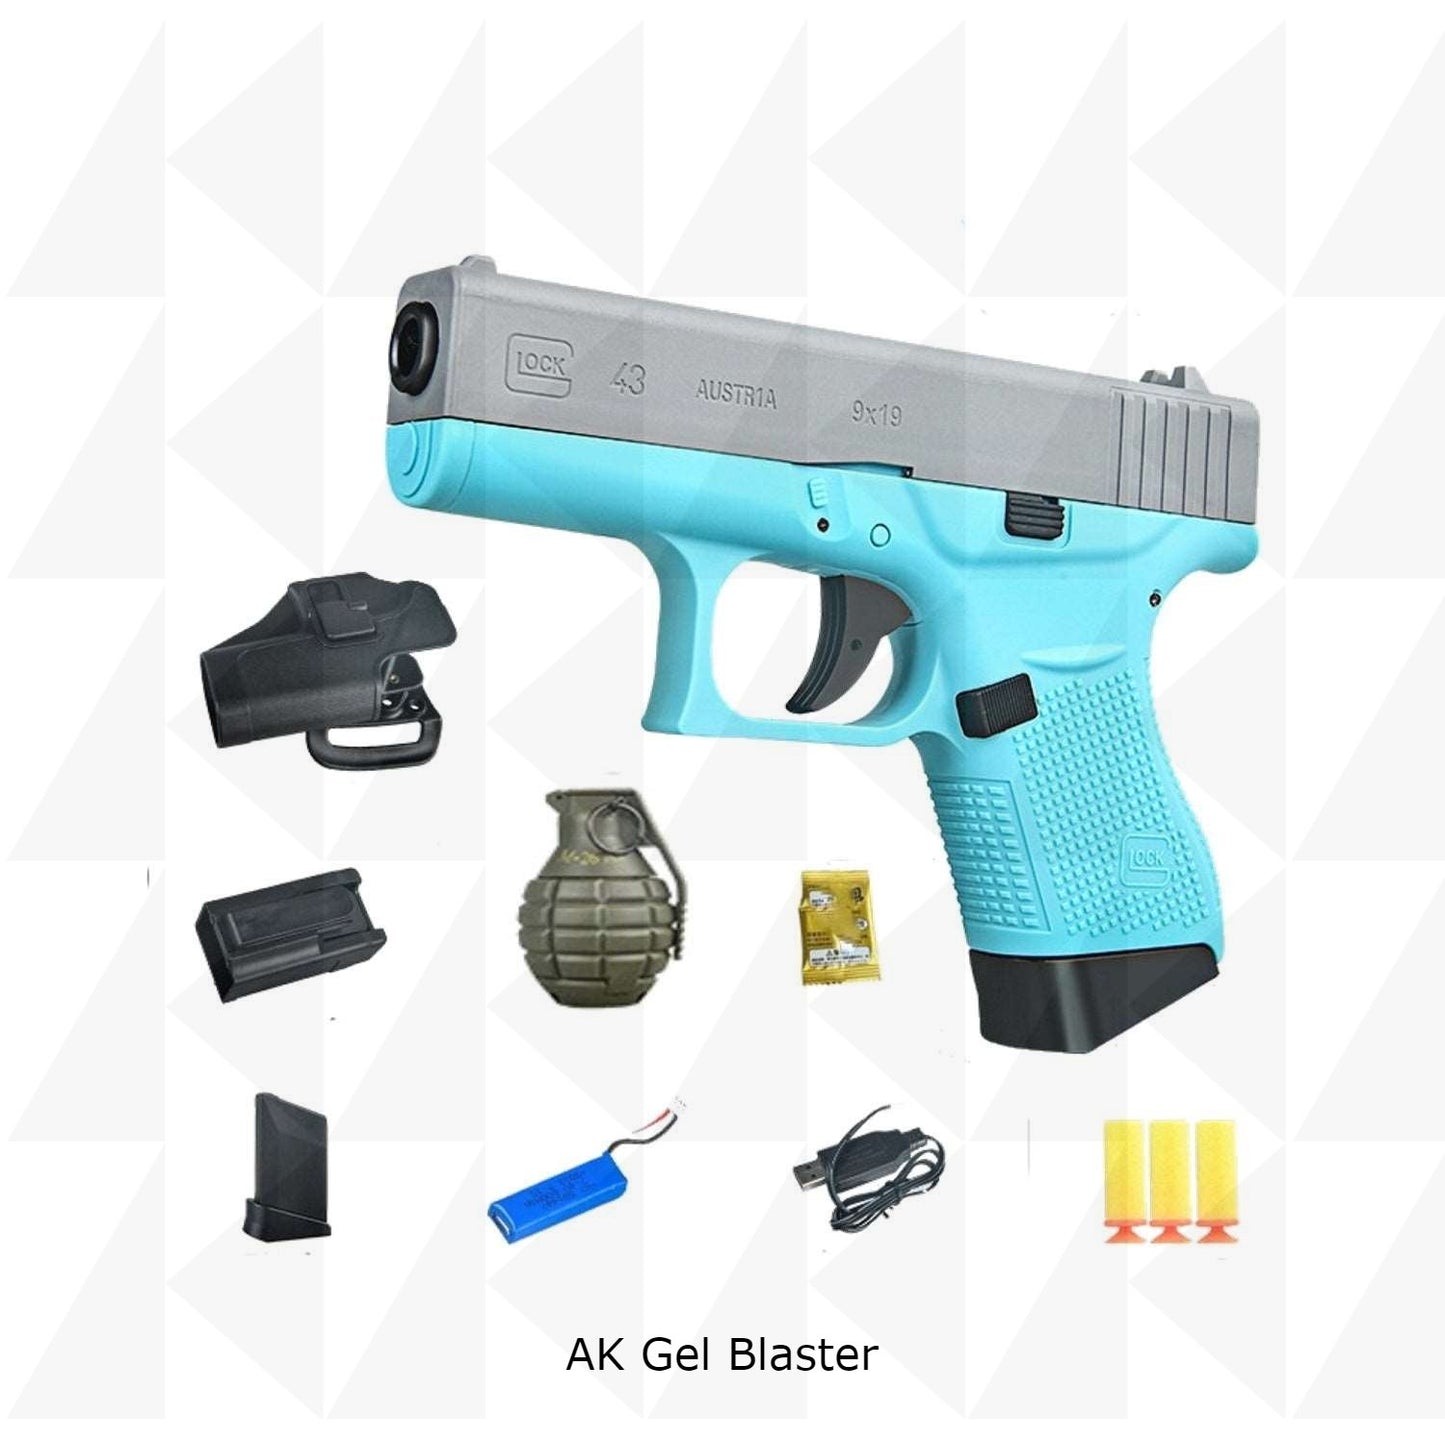 JM G43 glock pistol gel blaster in USA popular in tiktok - AKgelblaster - US stock